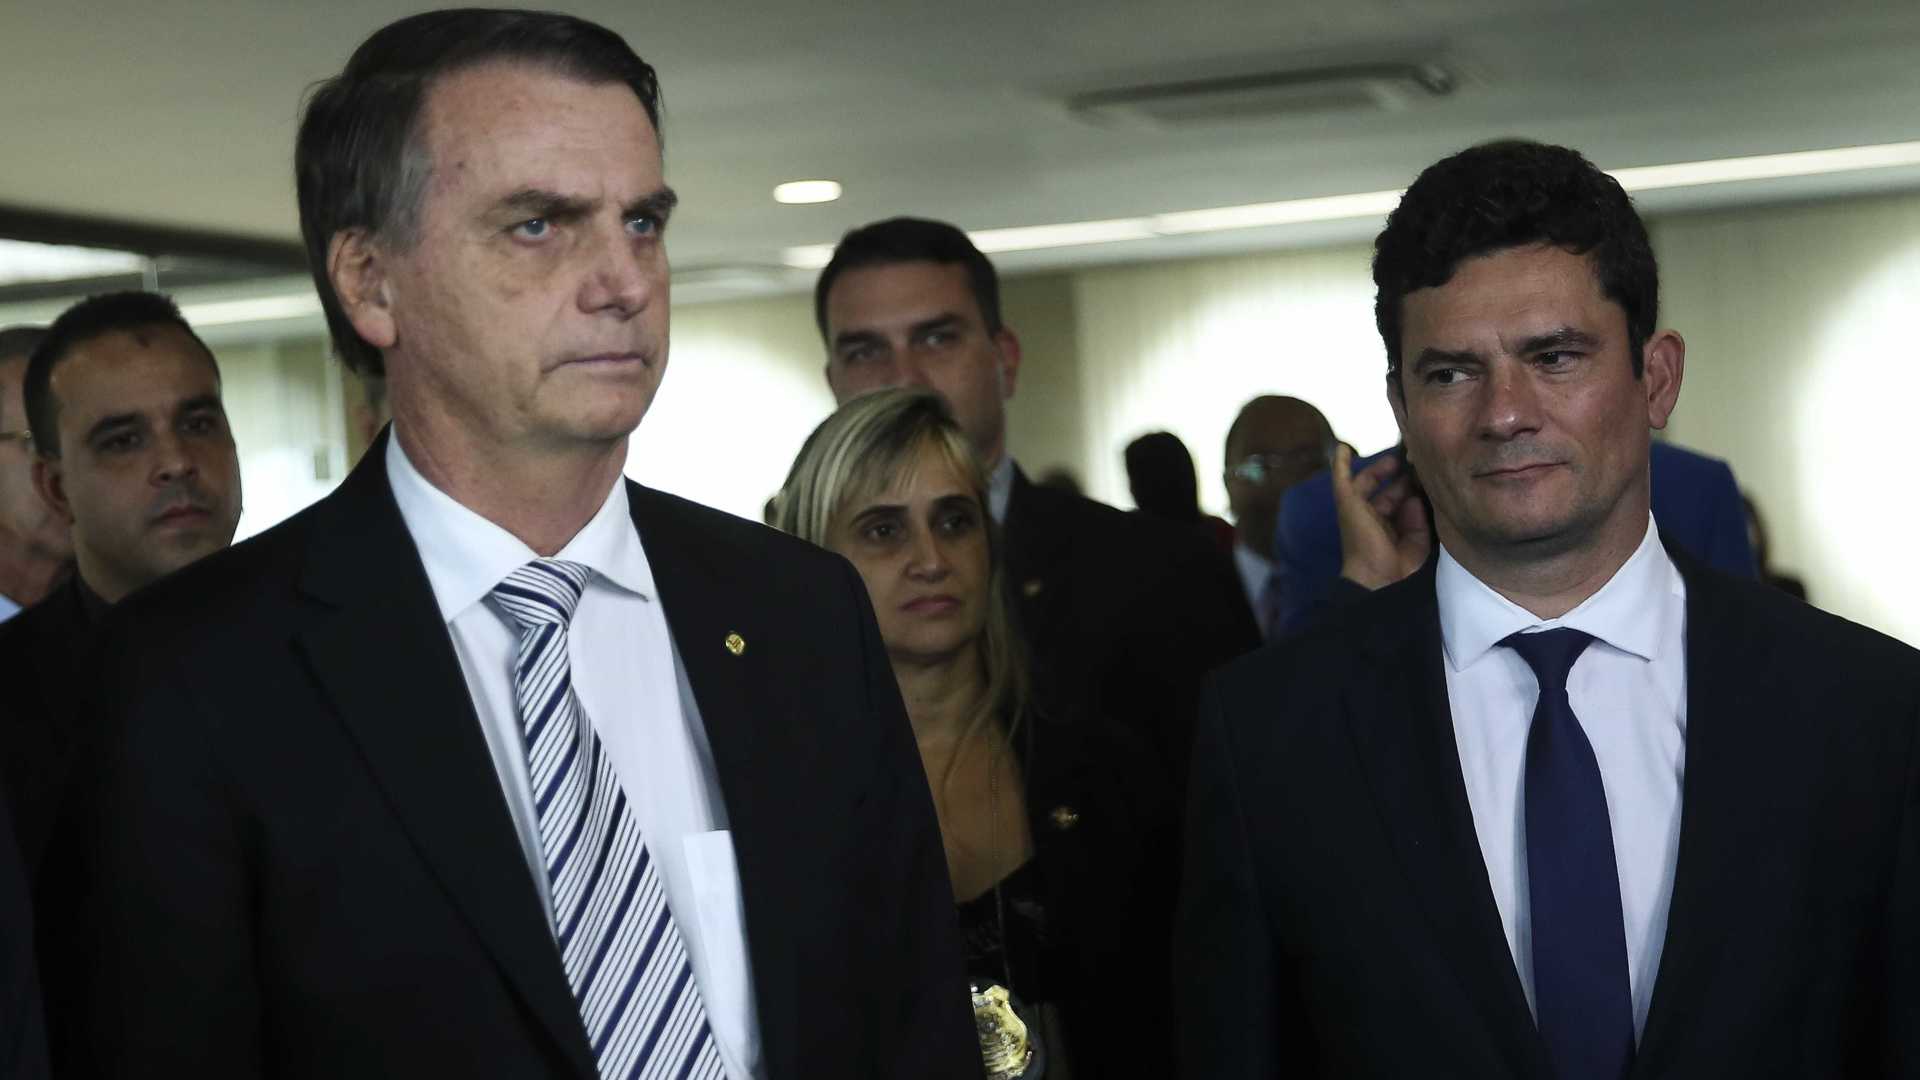 Bolsonaro tem acordo com Moro para afastar alvos de denúncias robustas